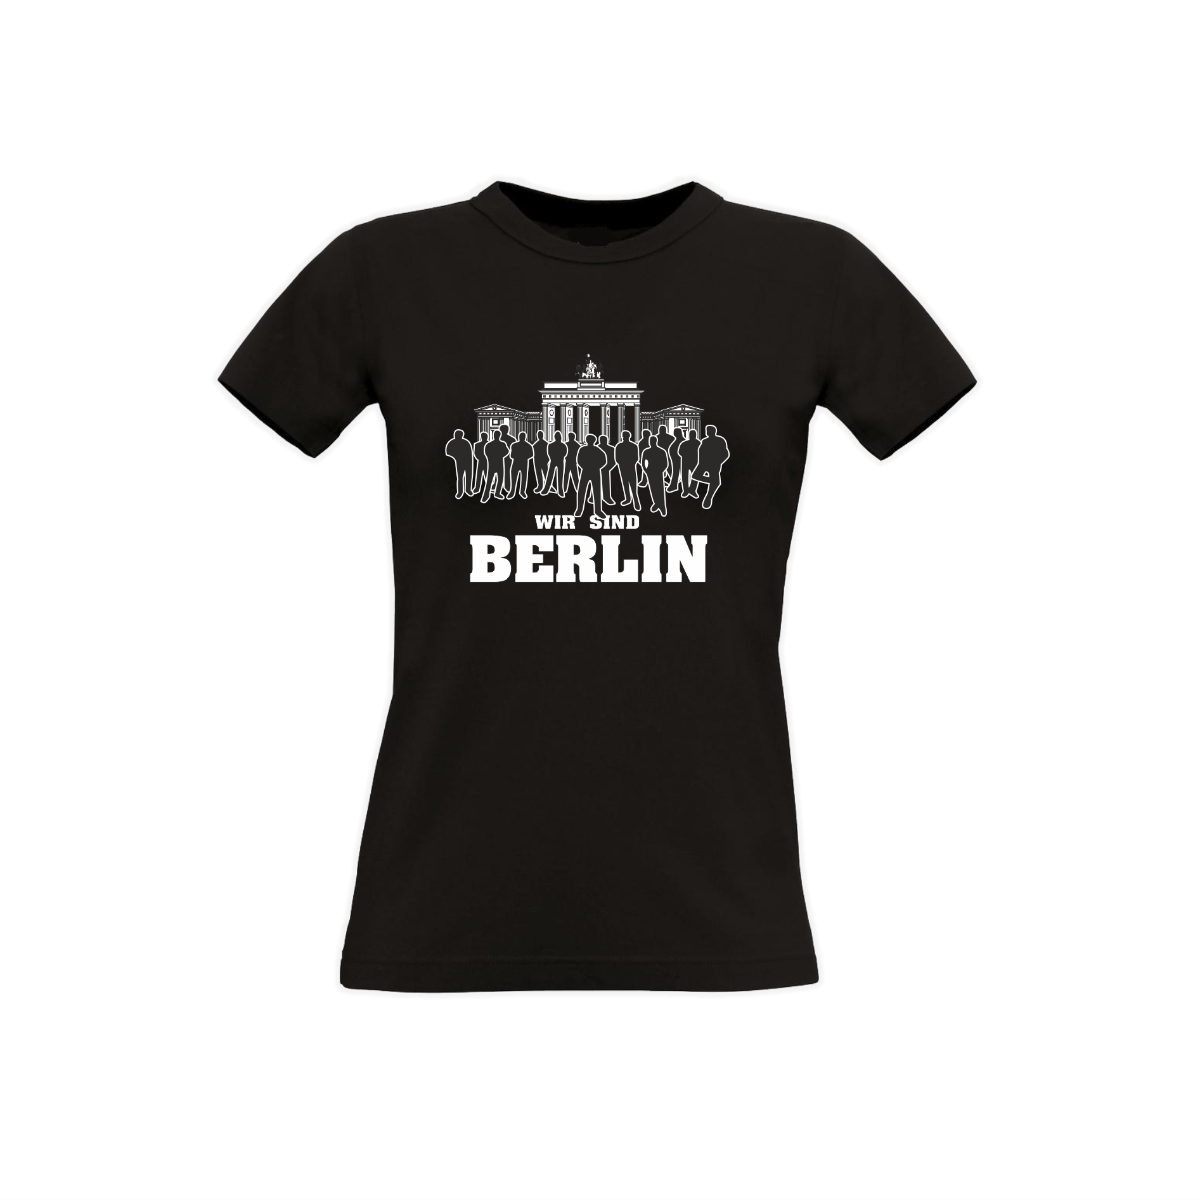 Girly-Shirt "WIR SIND BERLIN" schwarz